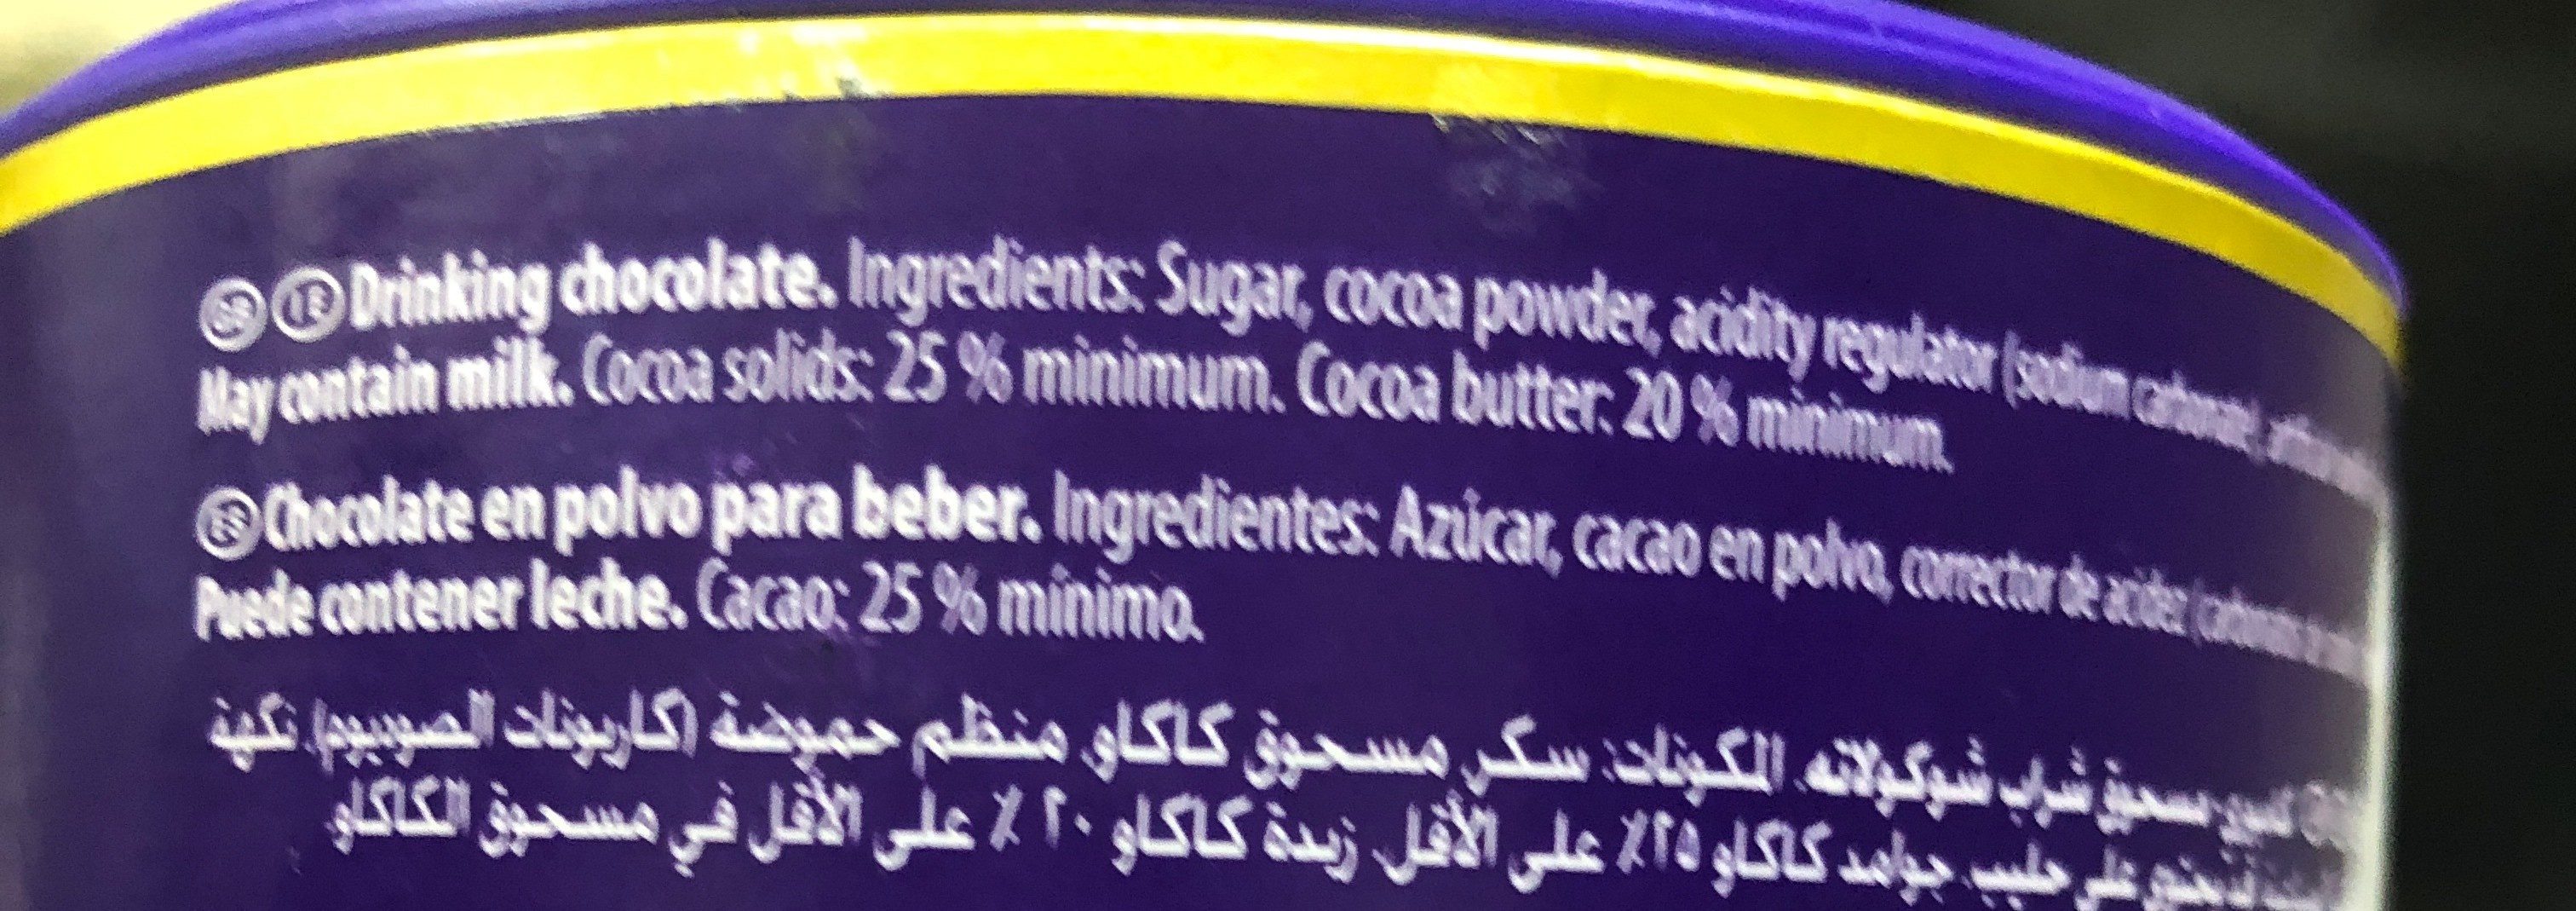 Original drinking chocolate - Ingredients - en